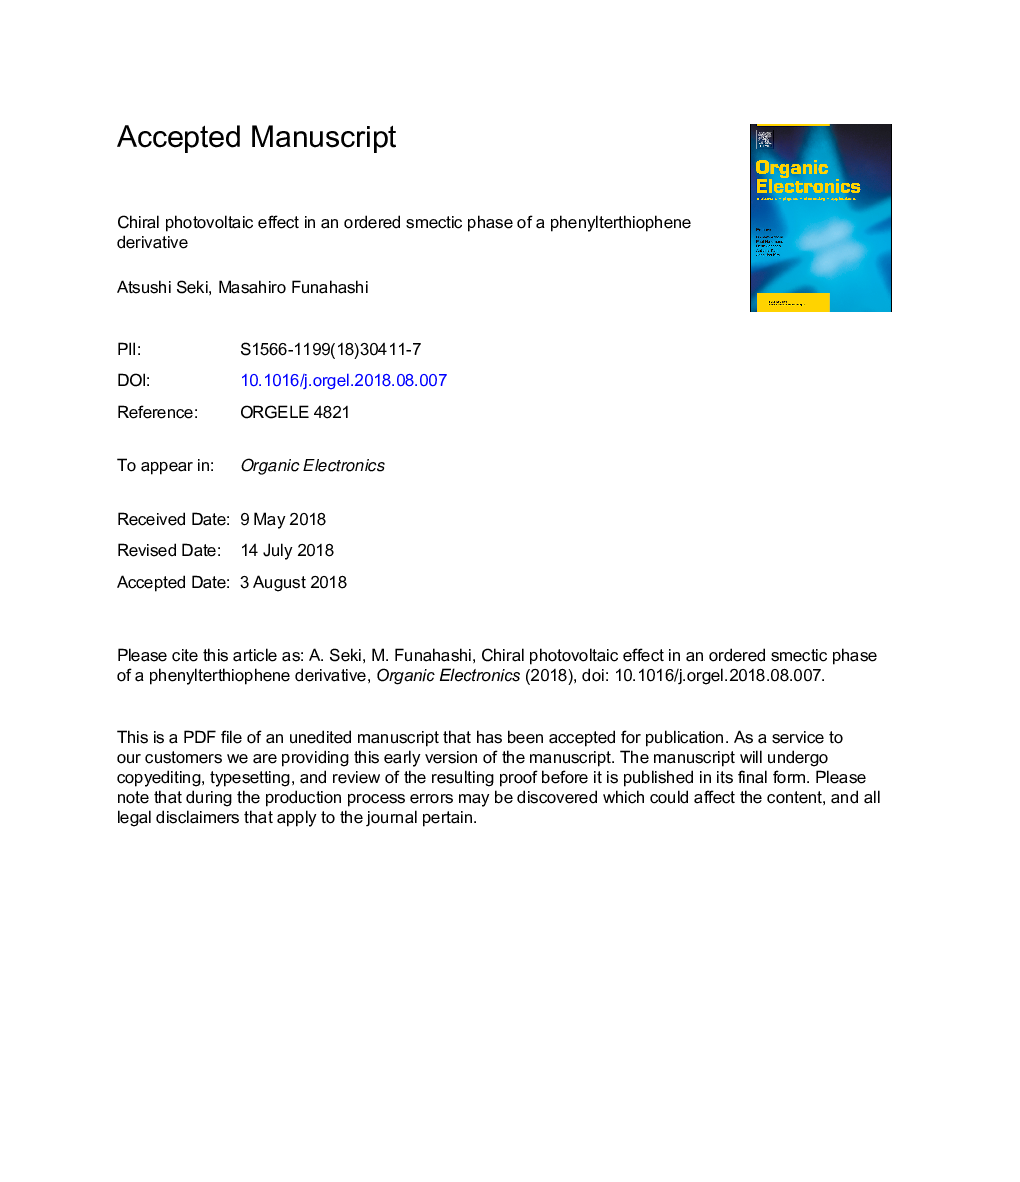 اثر فتوولتائیک کریل در یک فرایند صحیح دستورالعمل یک مشتق از فنیل تتریفوفن 